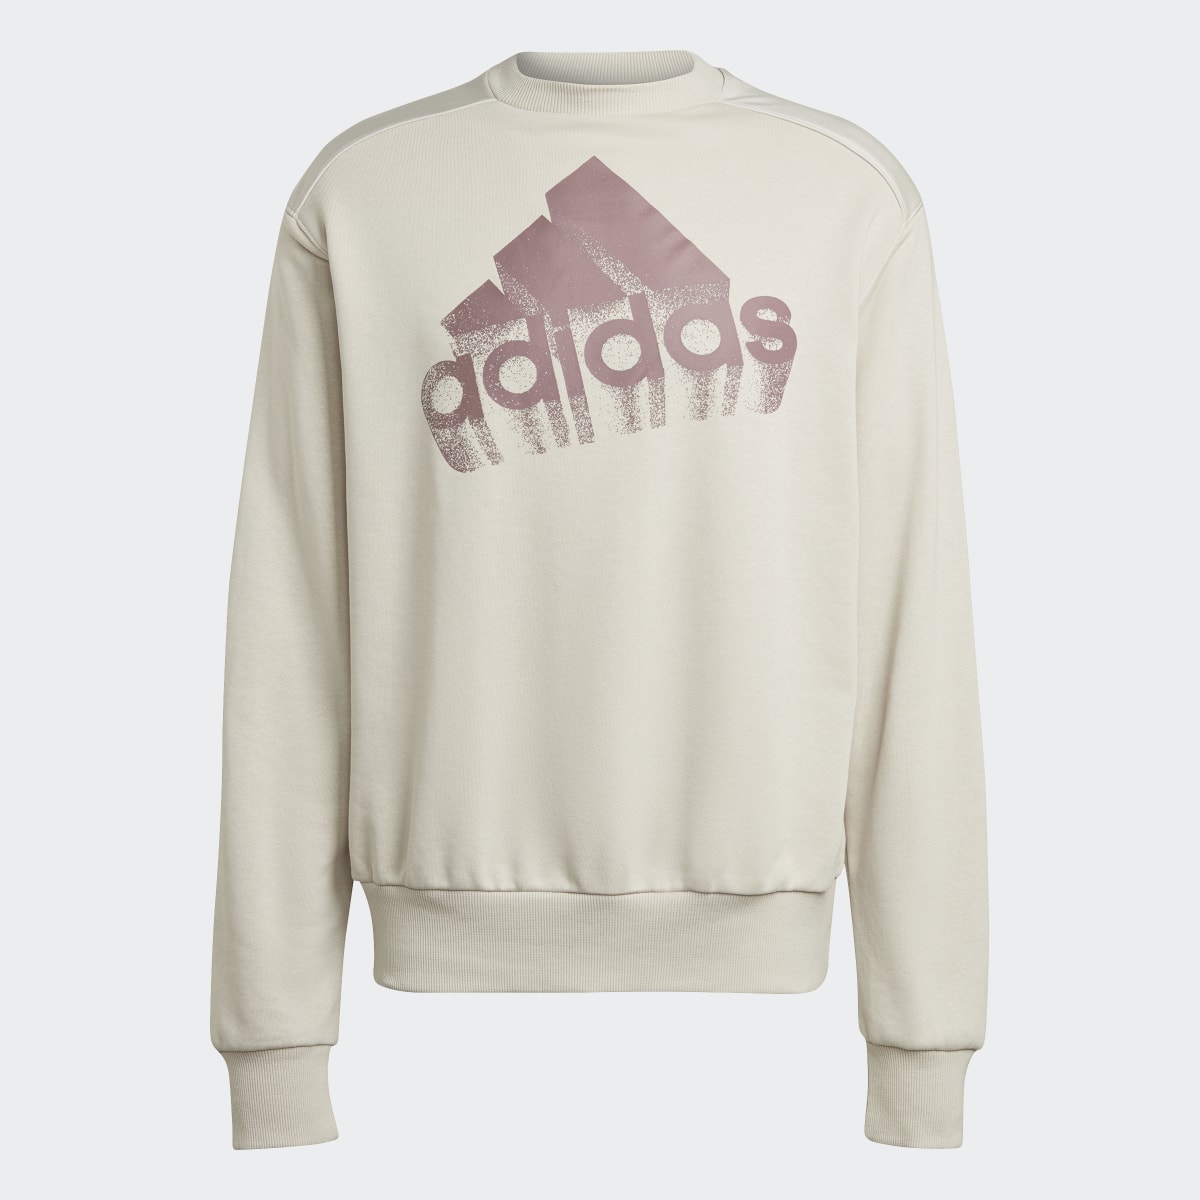 Adidas Essentials Brand Love French Terry Sweatshirt – Genderneutral. 4